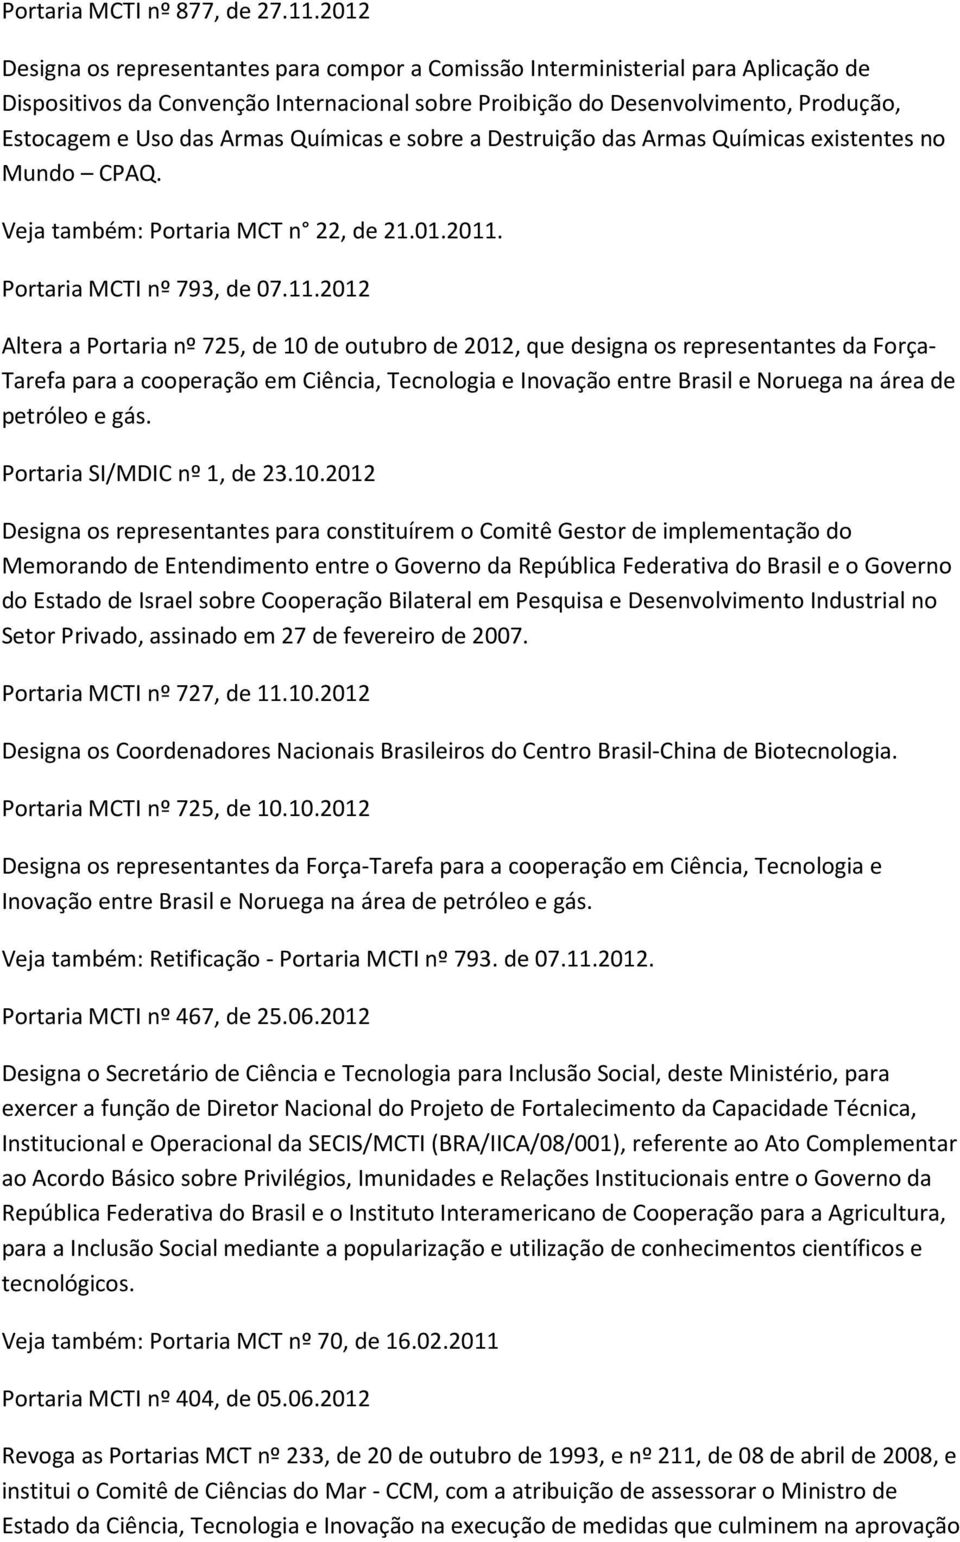 Armas Químicas e sobre a Destruição das Armas Químicas existentes no Mundo CPAQ. Portaria MCT n 22, de 21.01.2011.